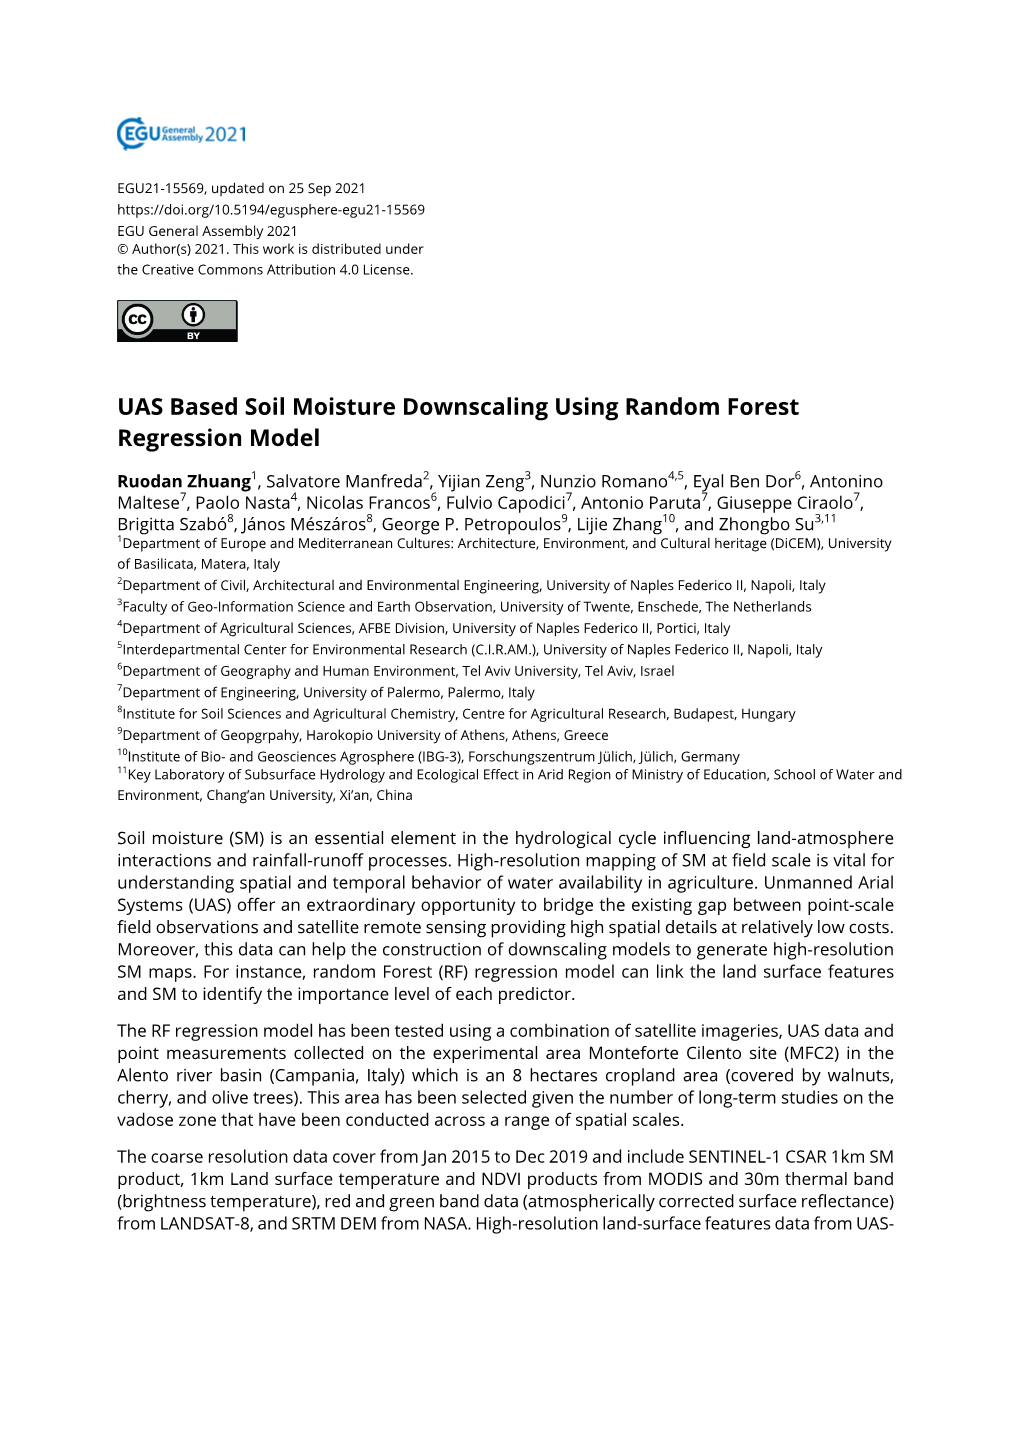 UAS Based Soil Moisture Downscaling Using Random Forest Regression Model